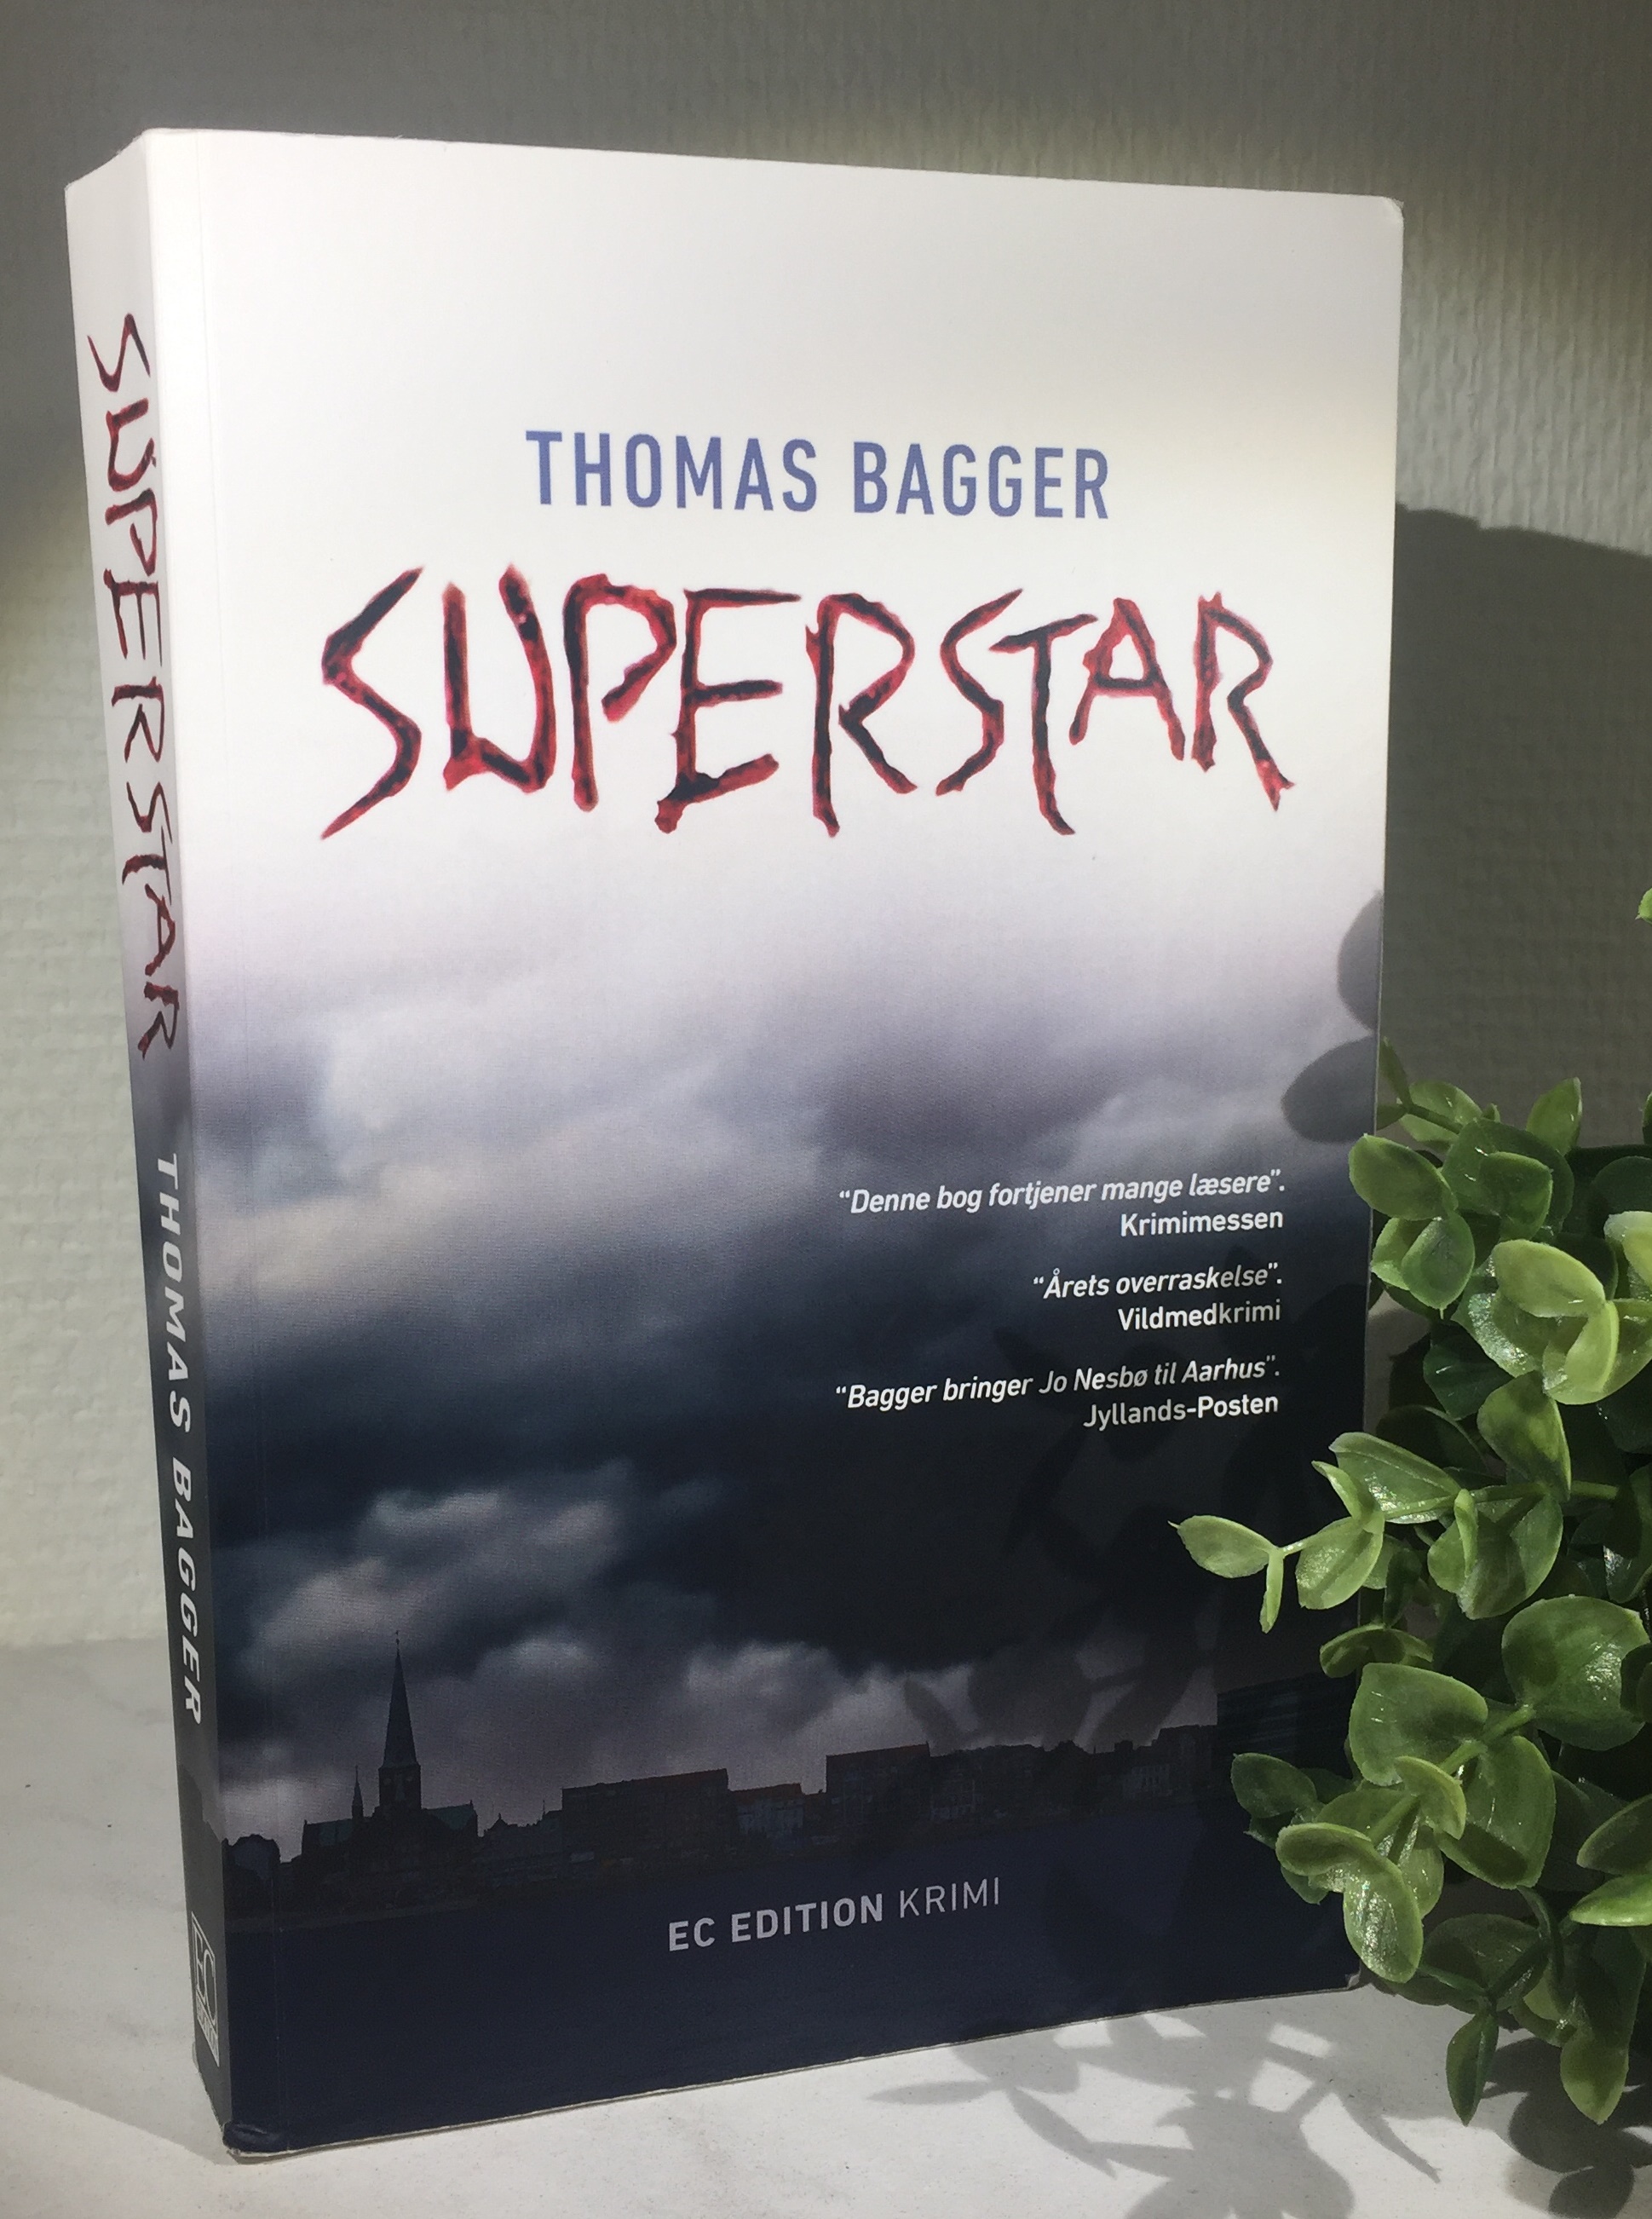 Thomas Bagger Superstar, Superstar, Thomas Bagger, Anmeldelse af Superstar af Thomas Bagger, Anmeldelse, Krumme anmelder, Krimi, EC Edition, 